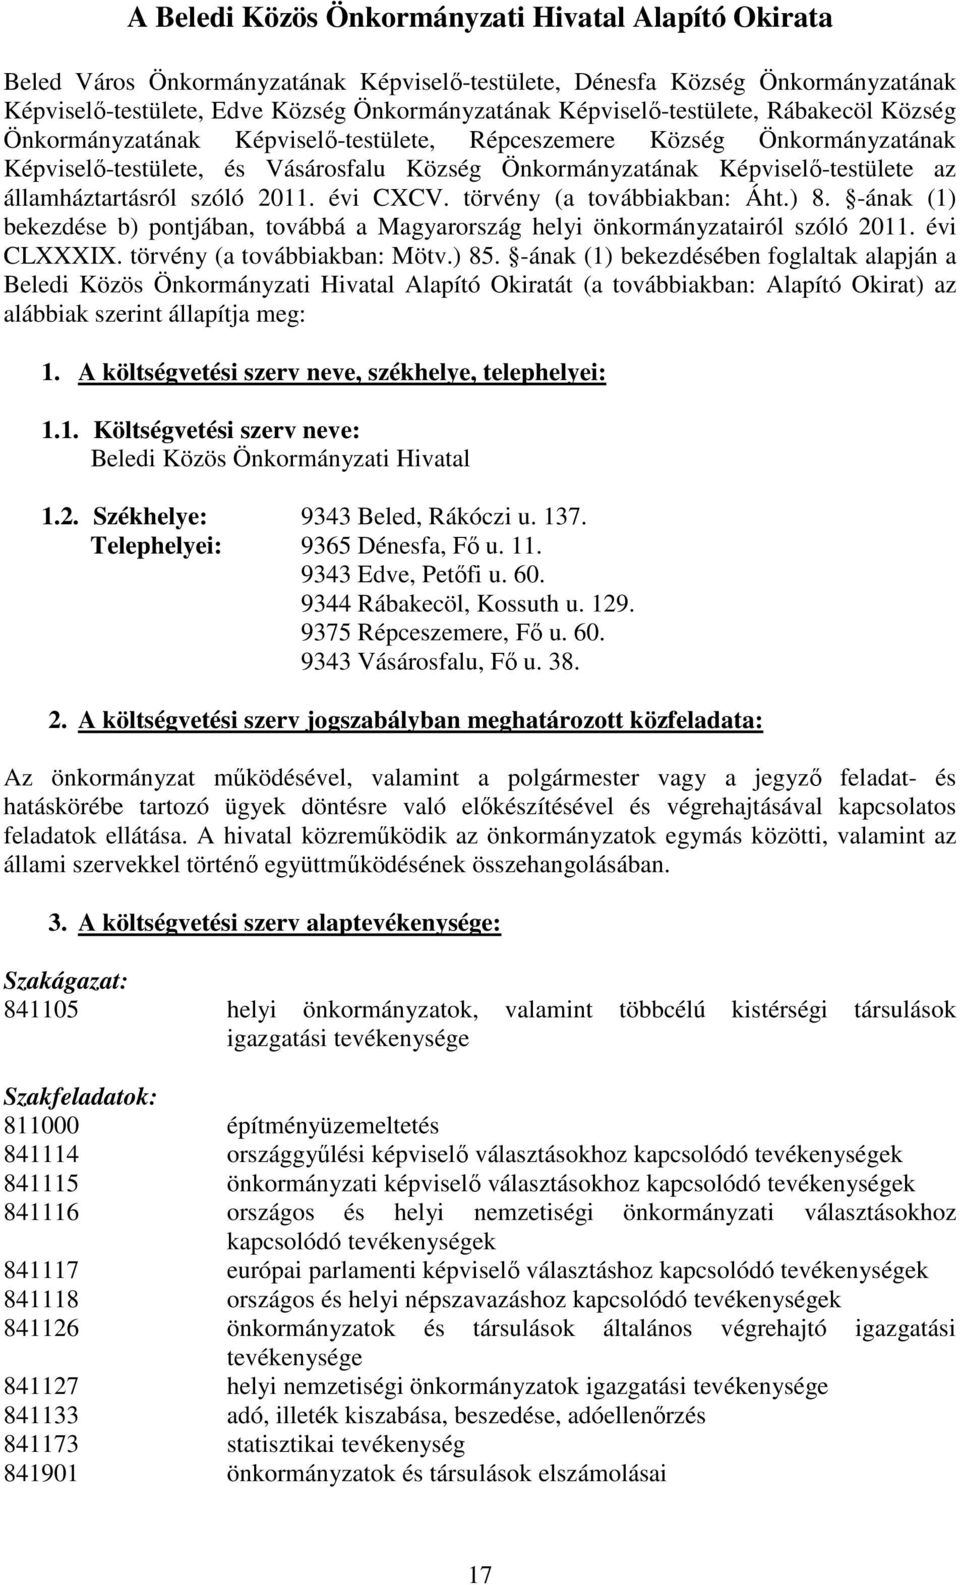 államháztartásról szóló 2011. évi CXCV. törvény (a továbbiakban: Áht.) 8. -ának (1) bekezdése b) pontjában, továbbá a Magyarország helyi önkormányzatairól szóló 2011. évi CLXXXIX.